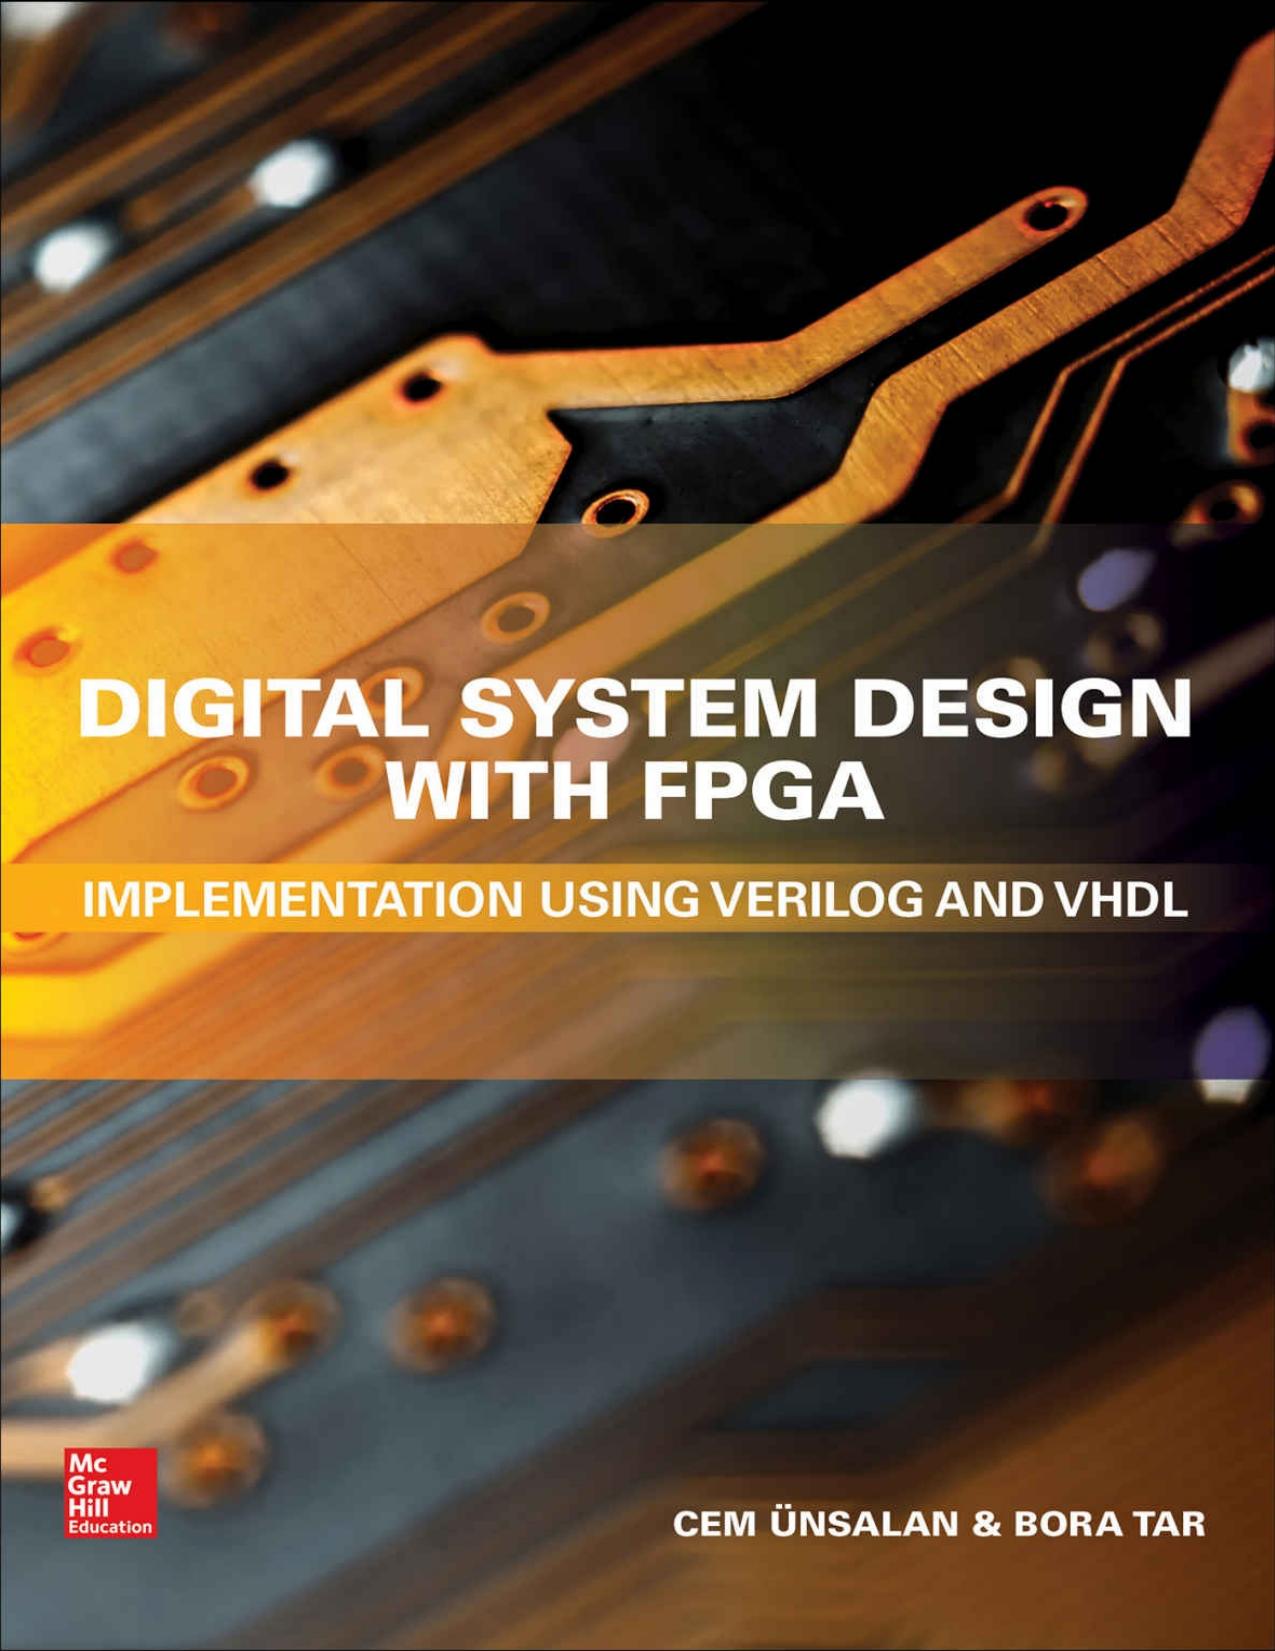 Digital System Design with FPGA: Implementation Using Verilog and VHDL - PDFDrive.com